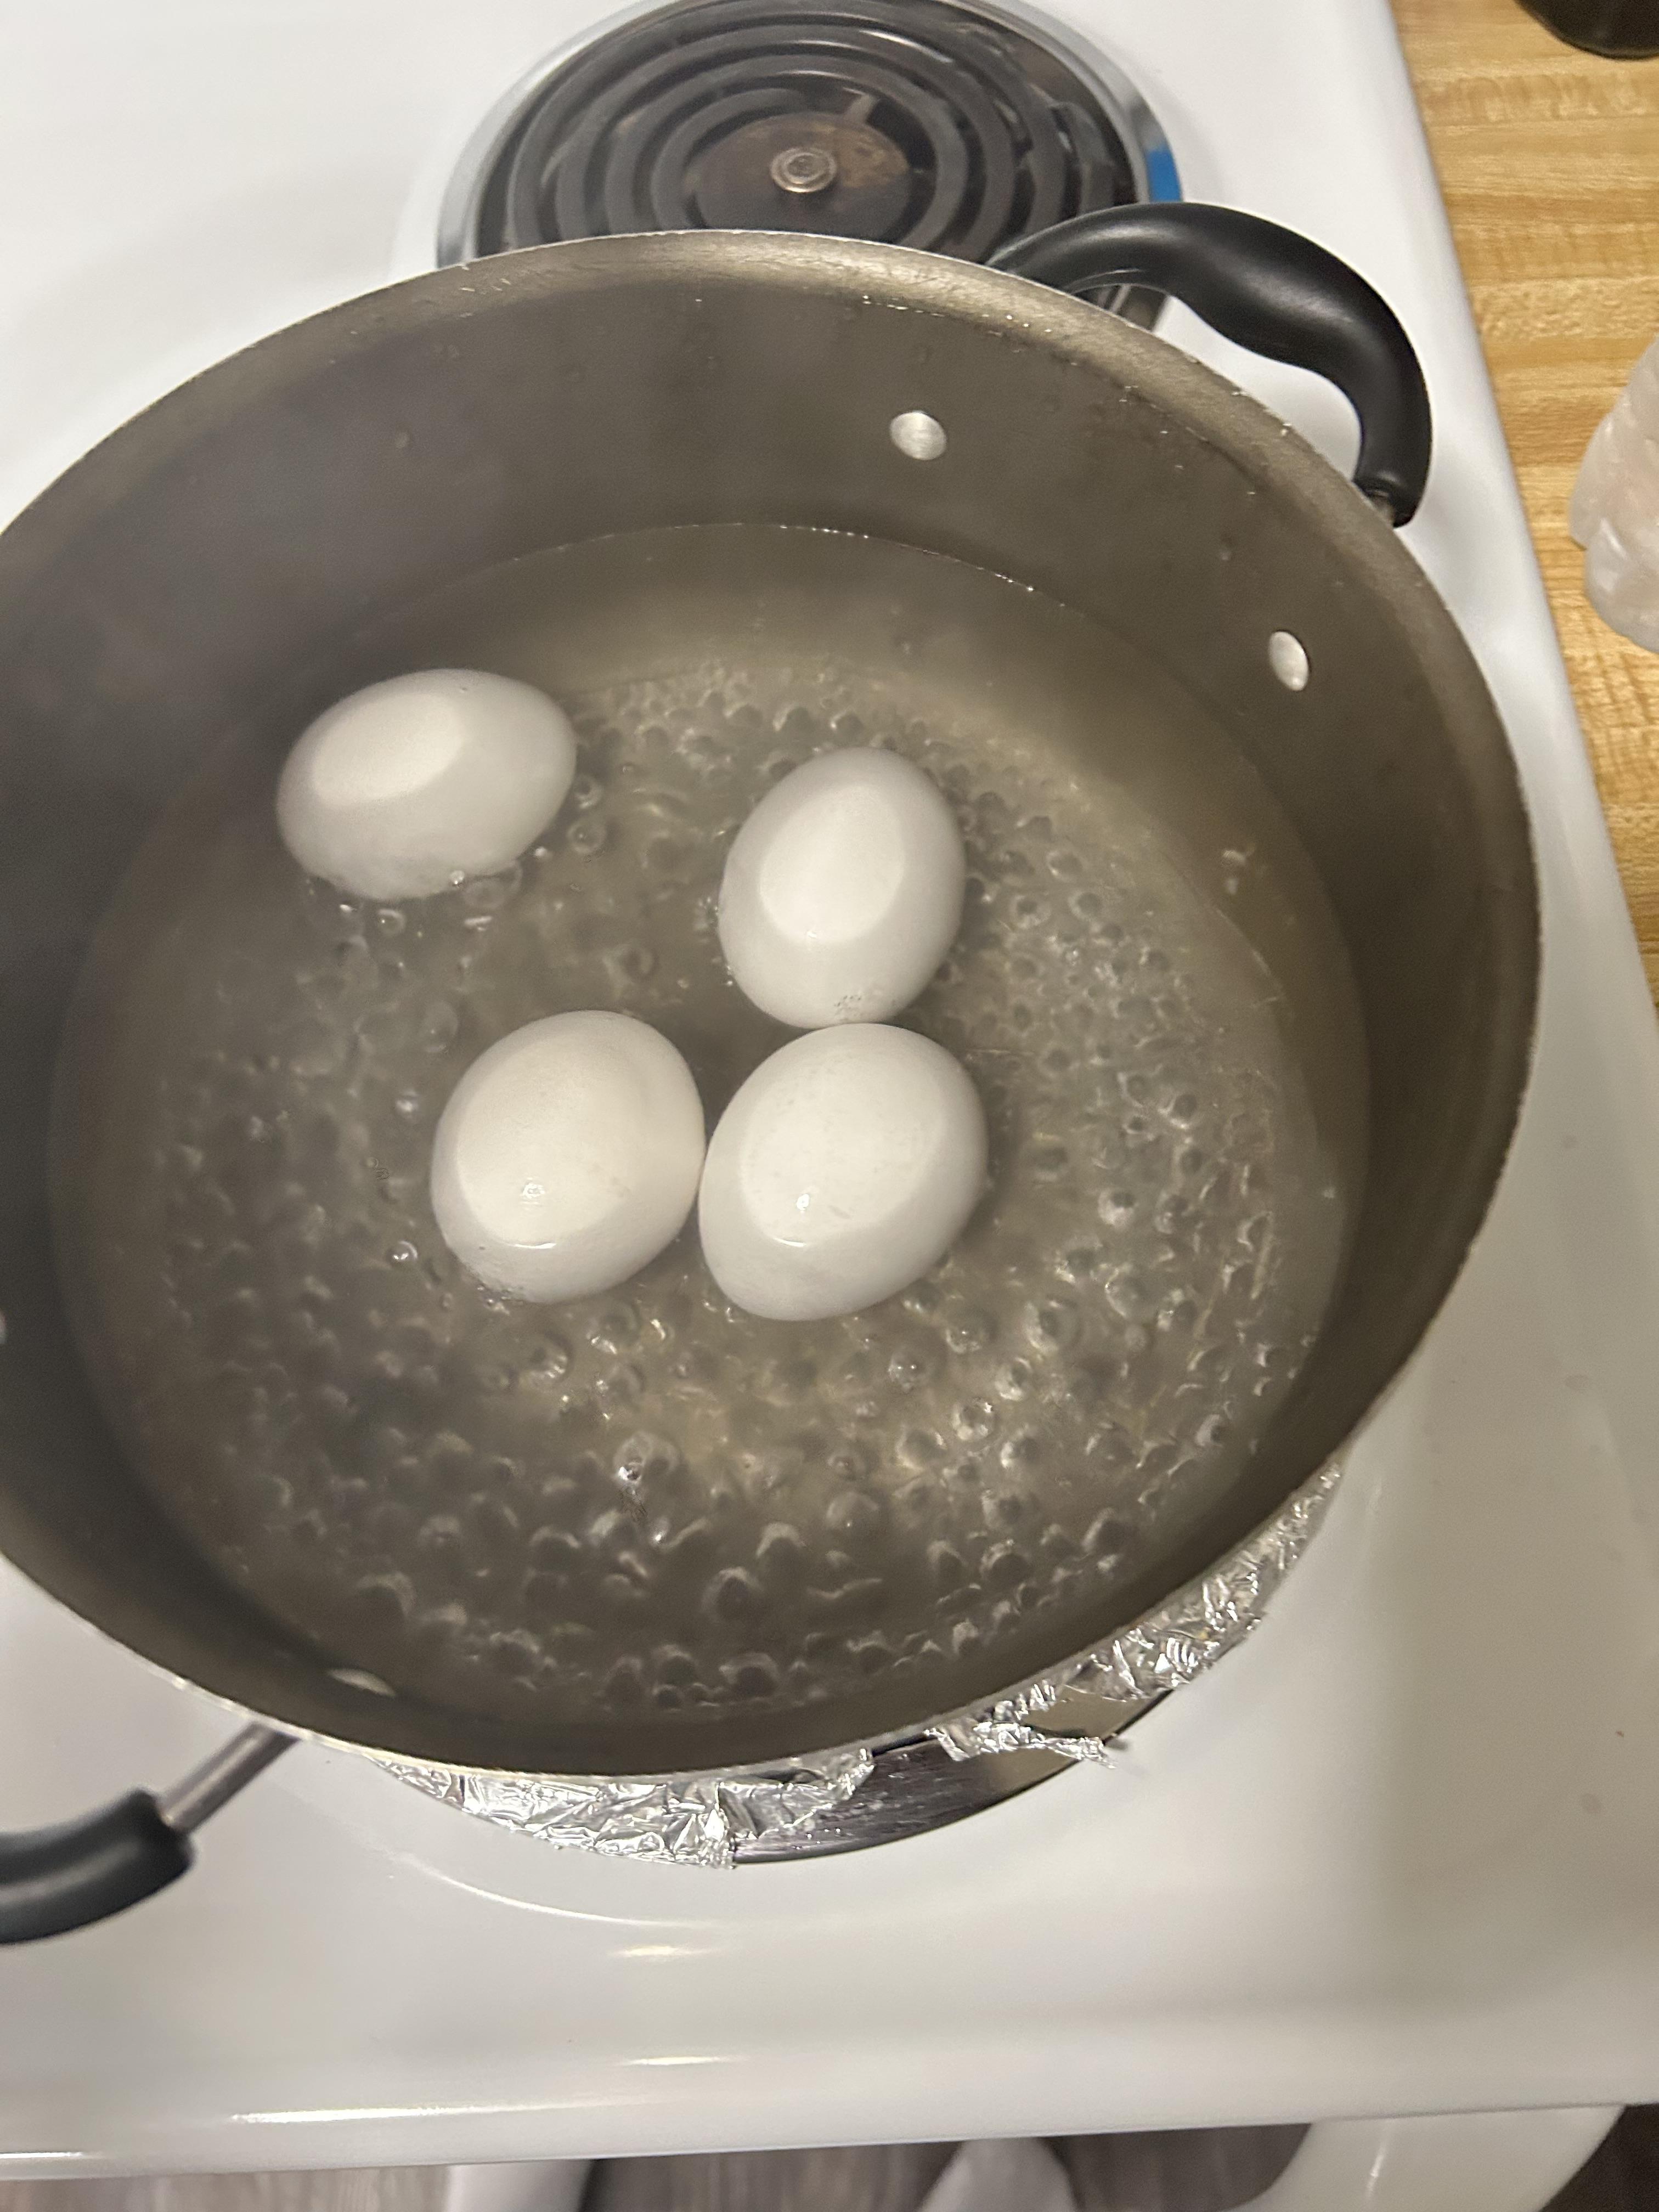 eggs in boiled water.jpg